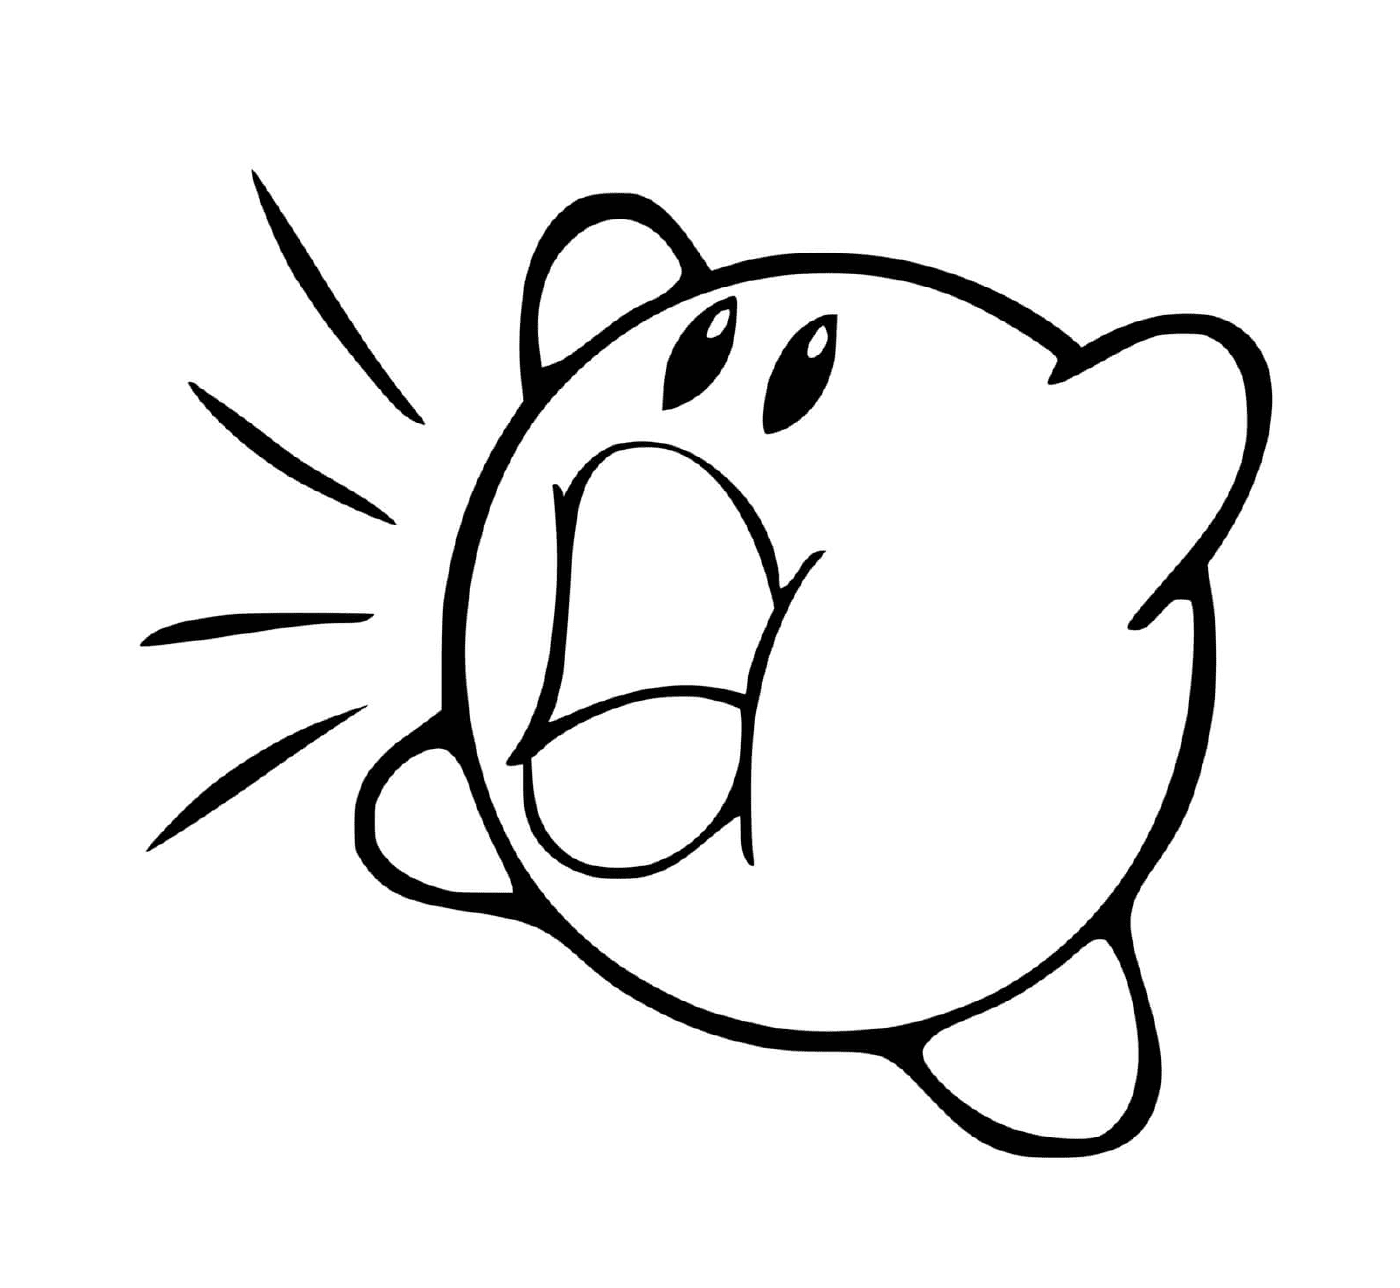   Kirby avale tout sur son passage 